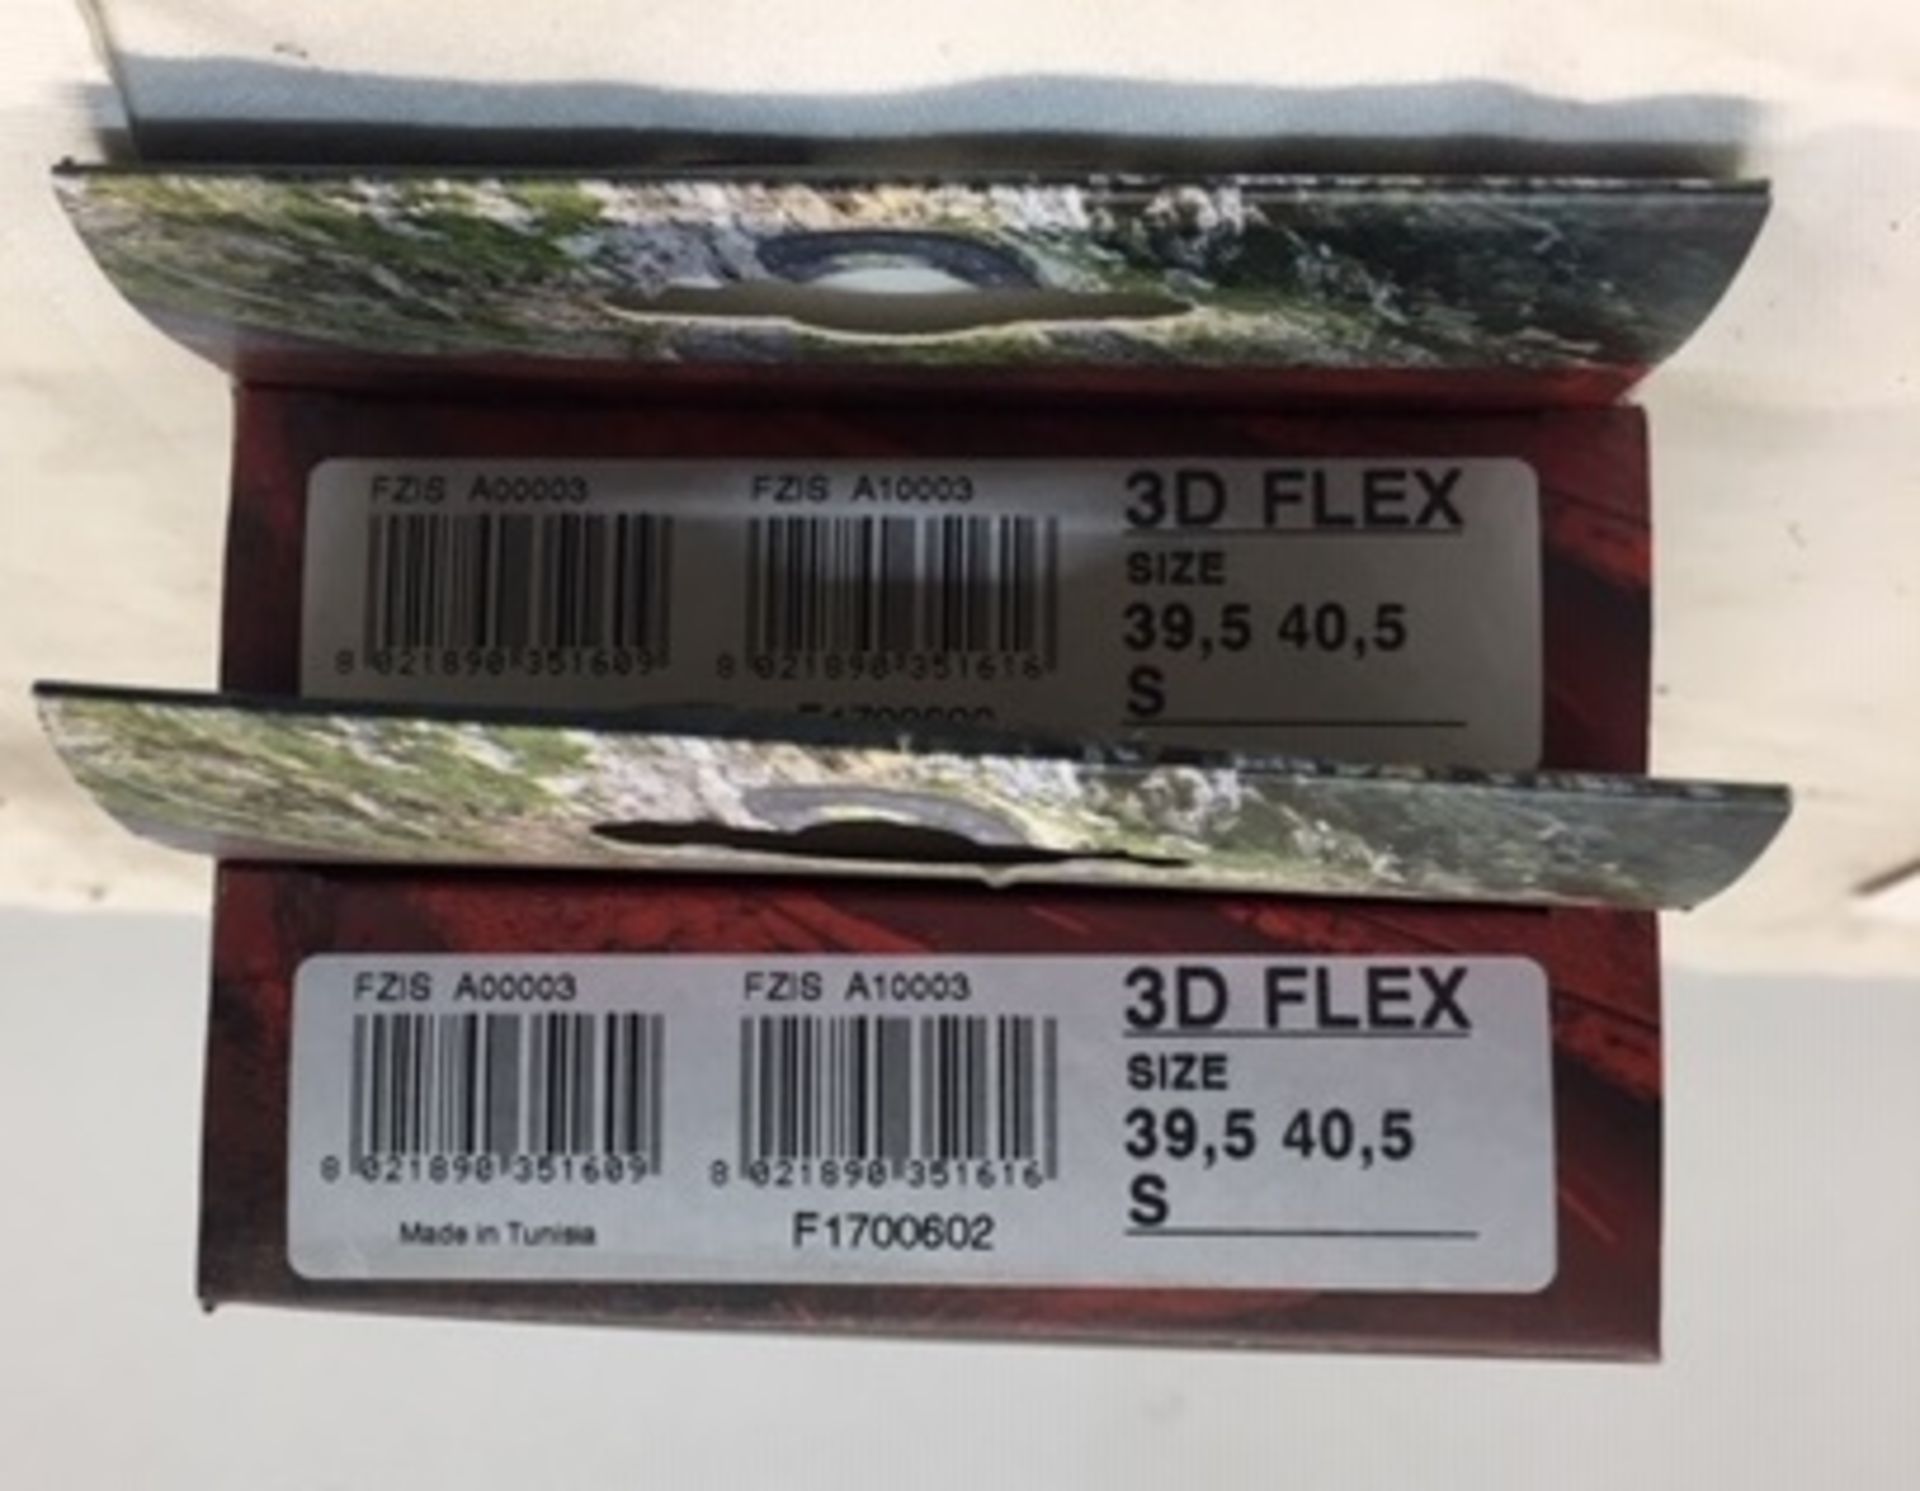 2 x Fizik 3-D Flex Insoles | EUR 39.5 - 40.5 | RRP £20.00 - Image 2 of 2